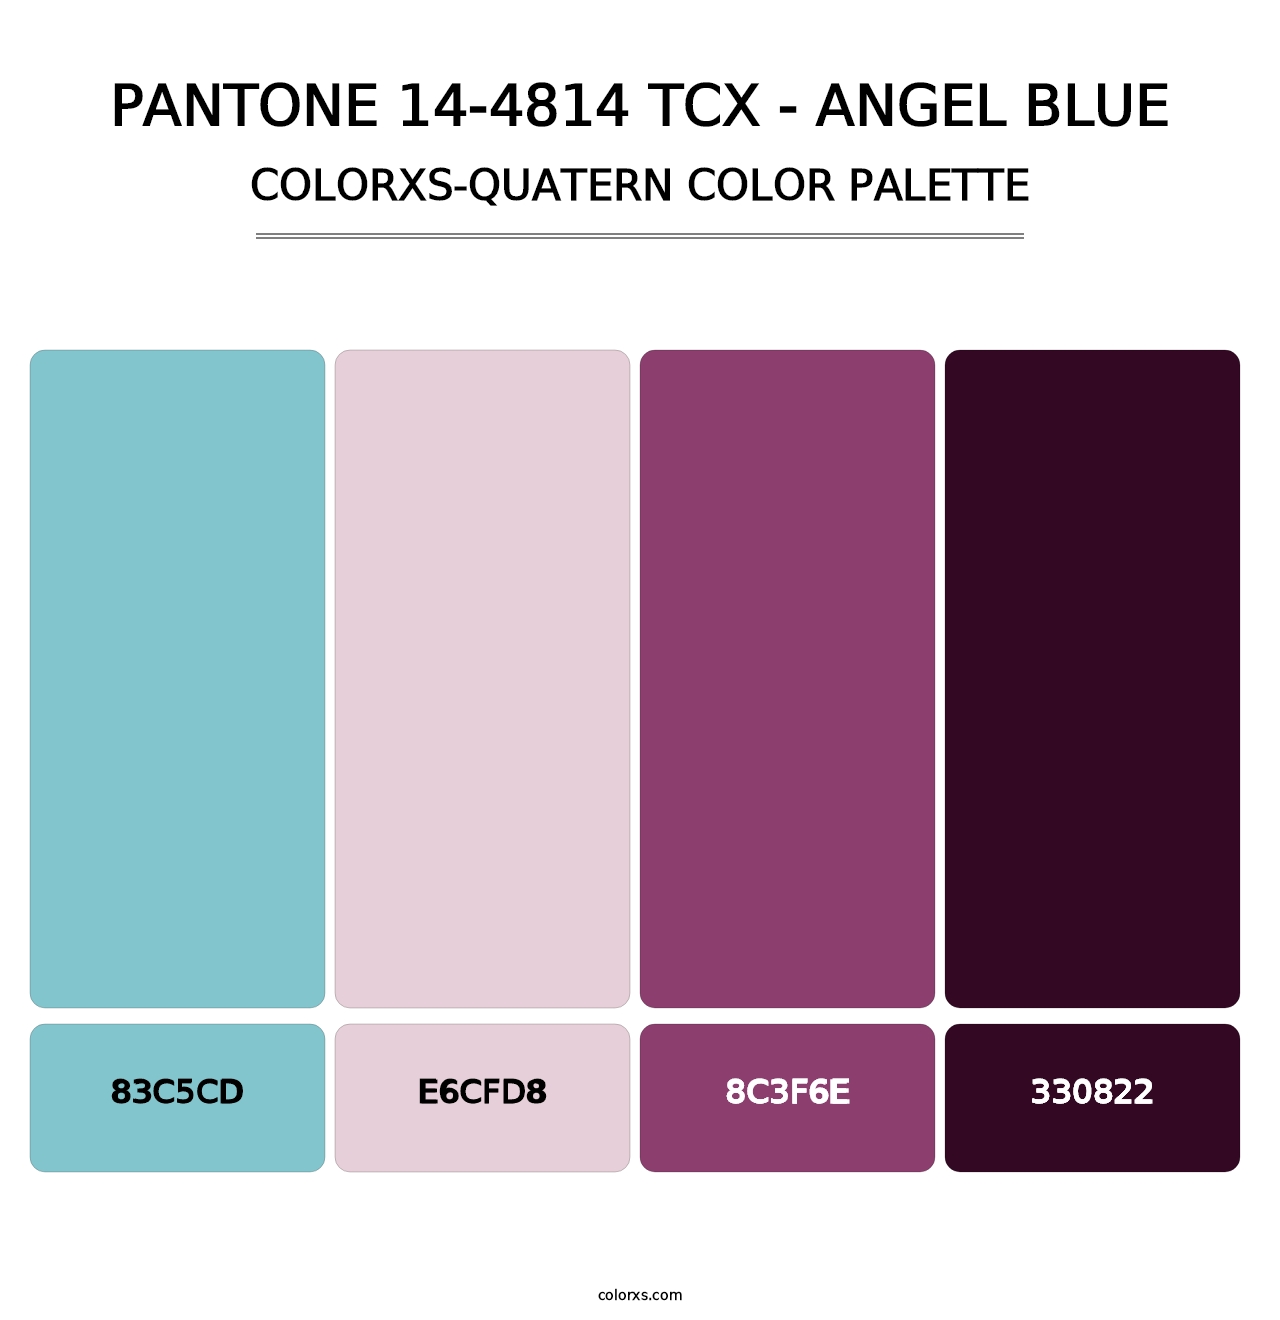 PANTONE 14-4814 TCX - Angel Blue - Colorxs Quatern Palette